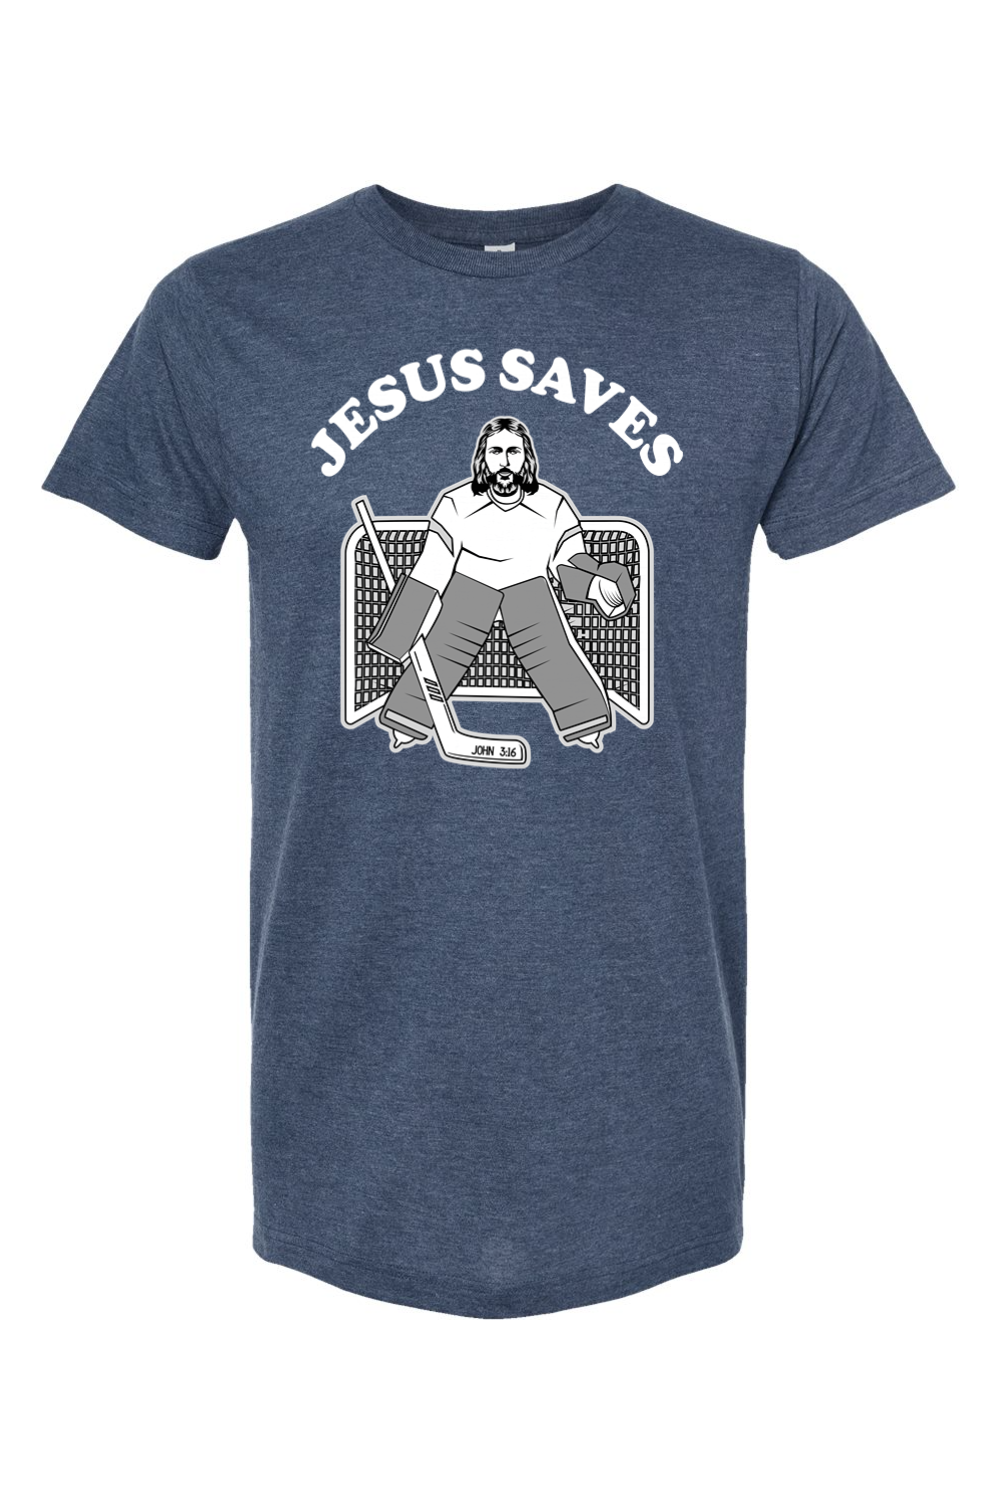 Jesus Saves - Hockey